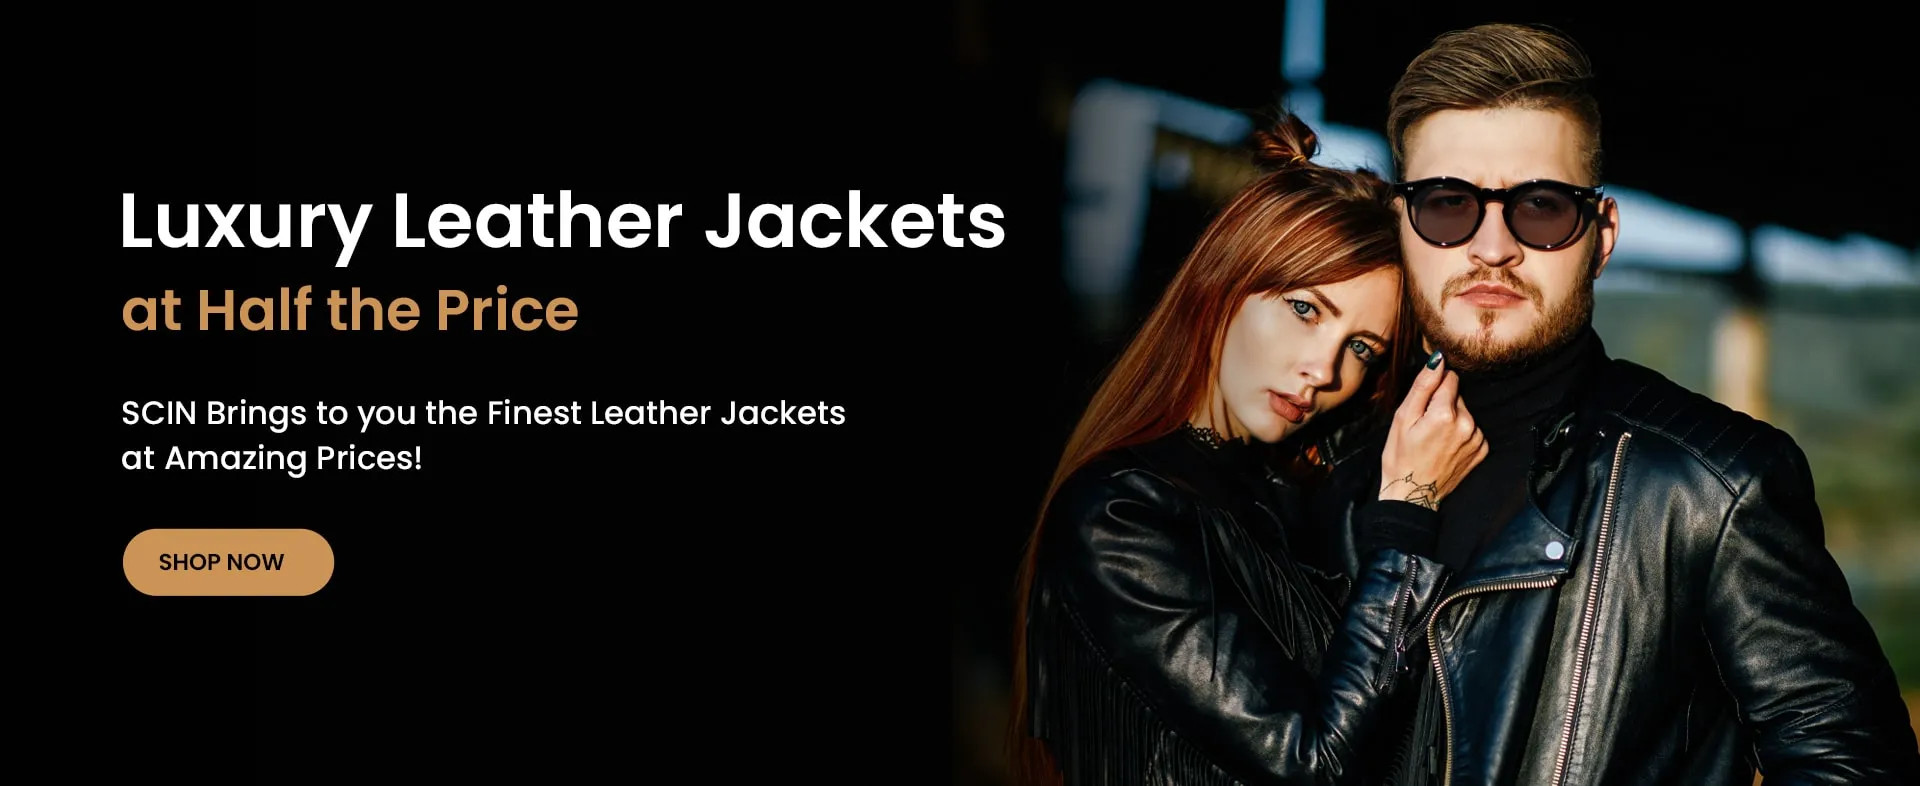 Luxury Leather Jackets